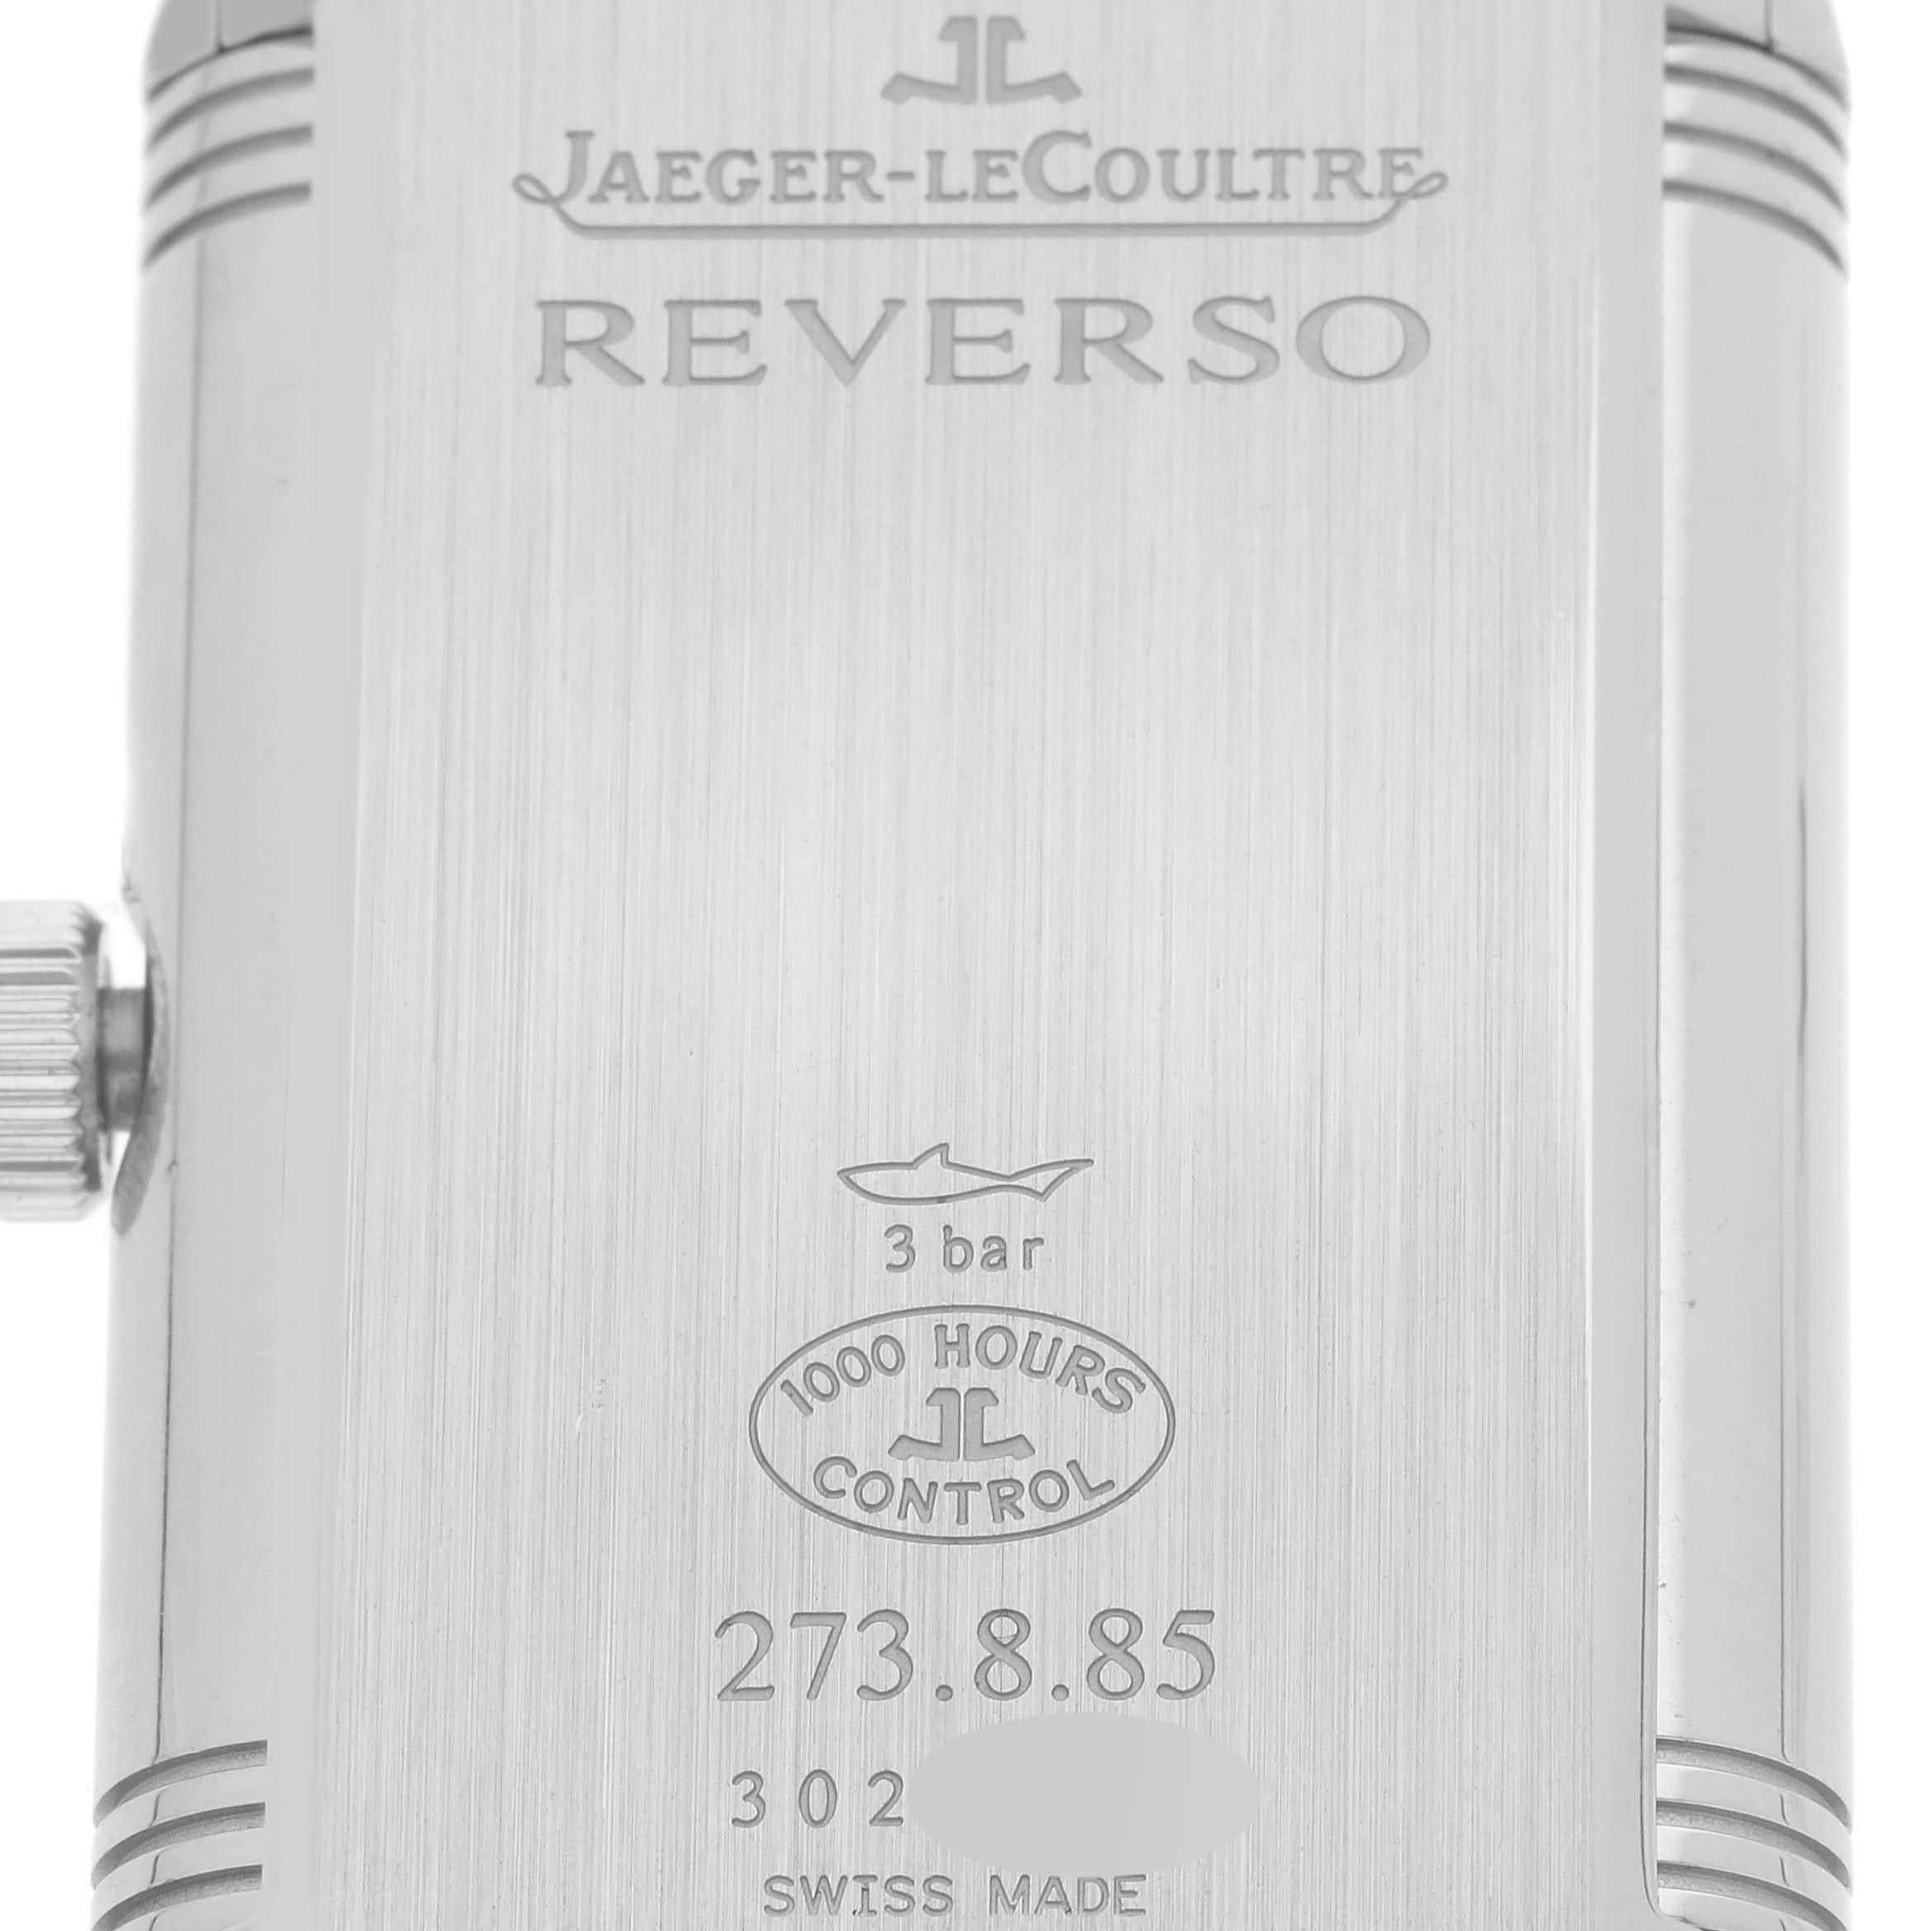 Jaeger LeCoultre Grande Reverso Stahl-Herrenuhr 273.8,85 Q3748421 1